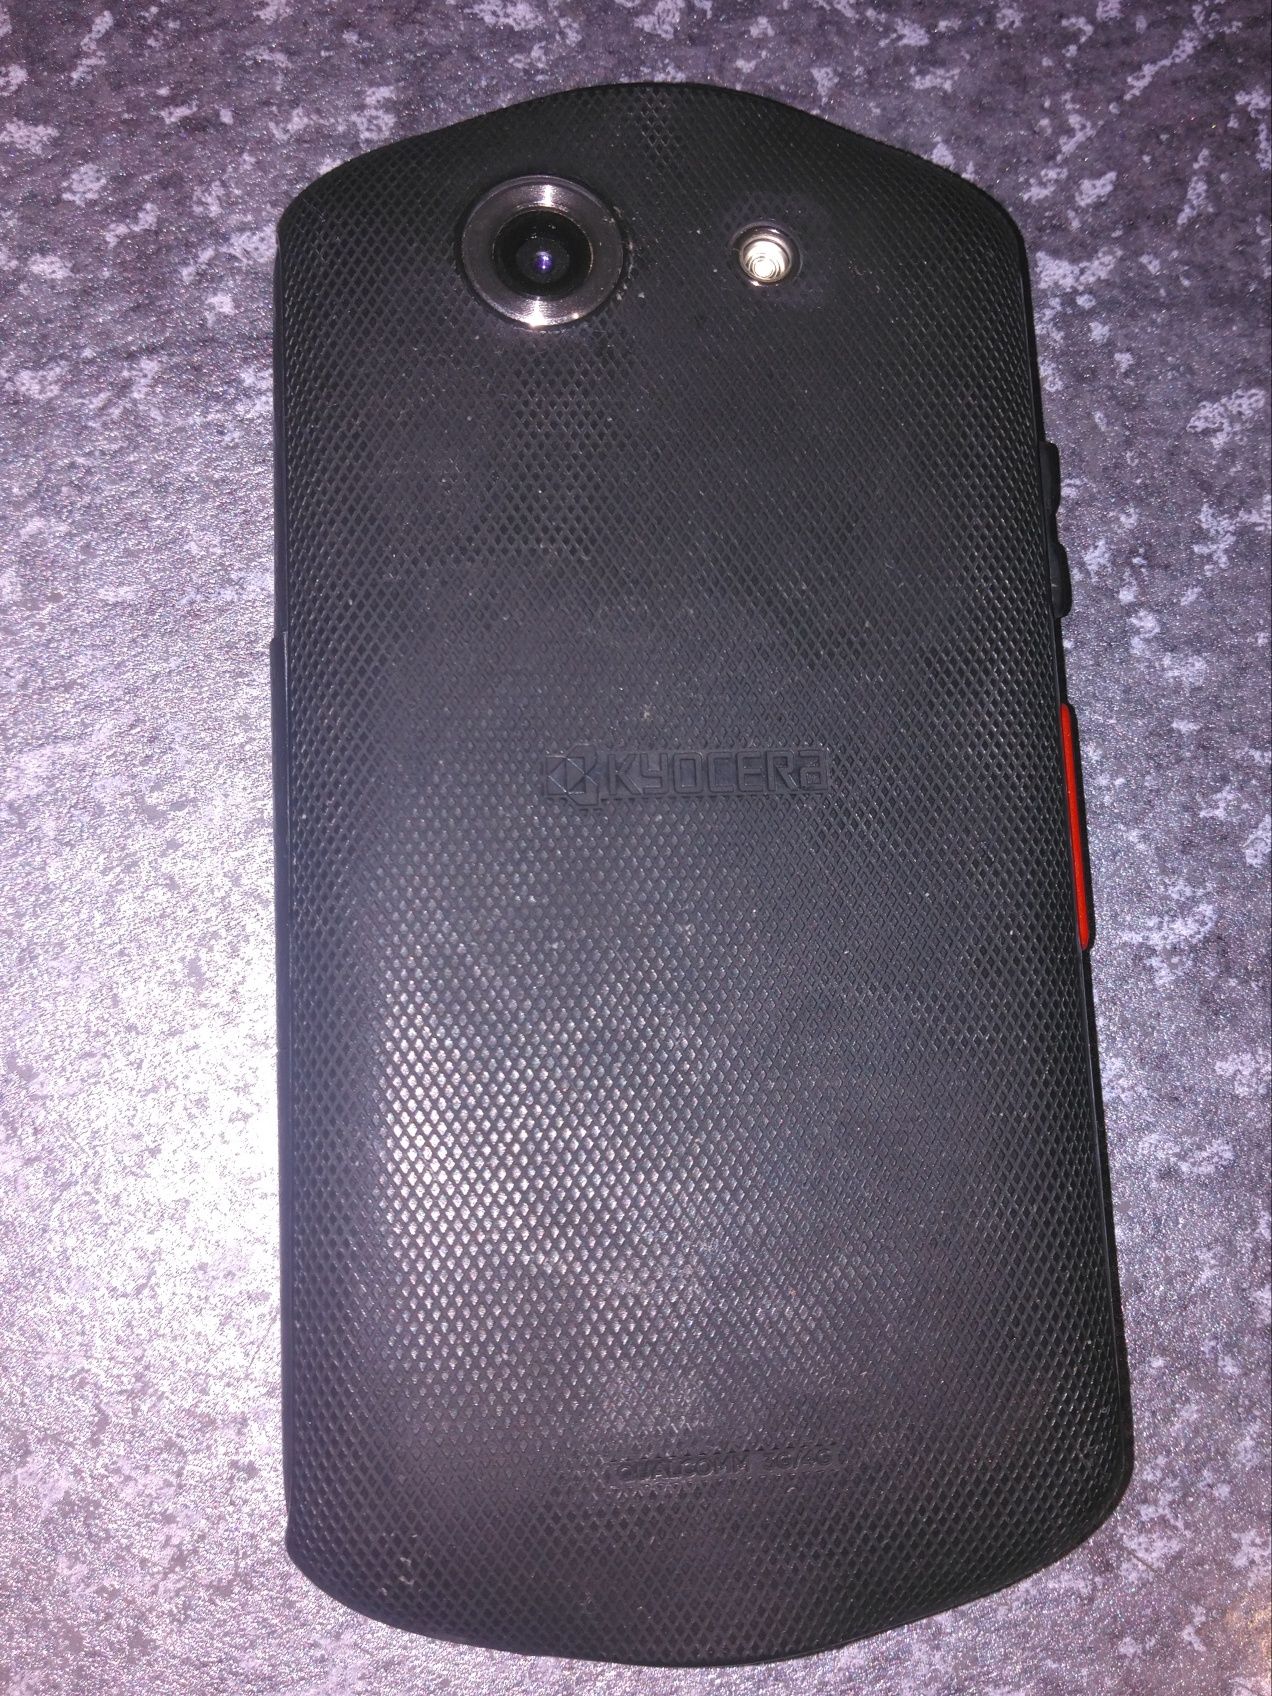 Захищений смартфон Kyocera E6560 2/16 гіг